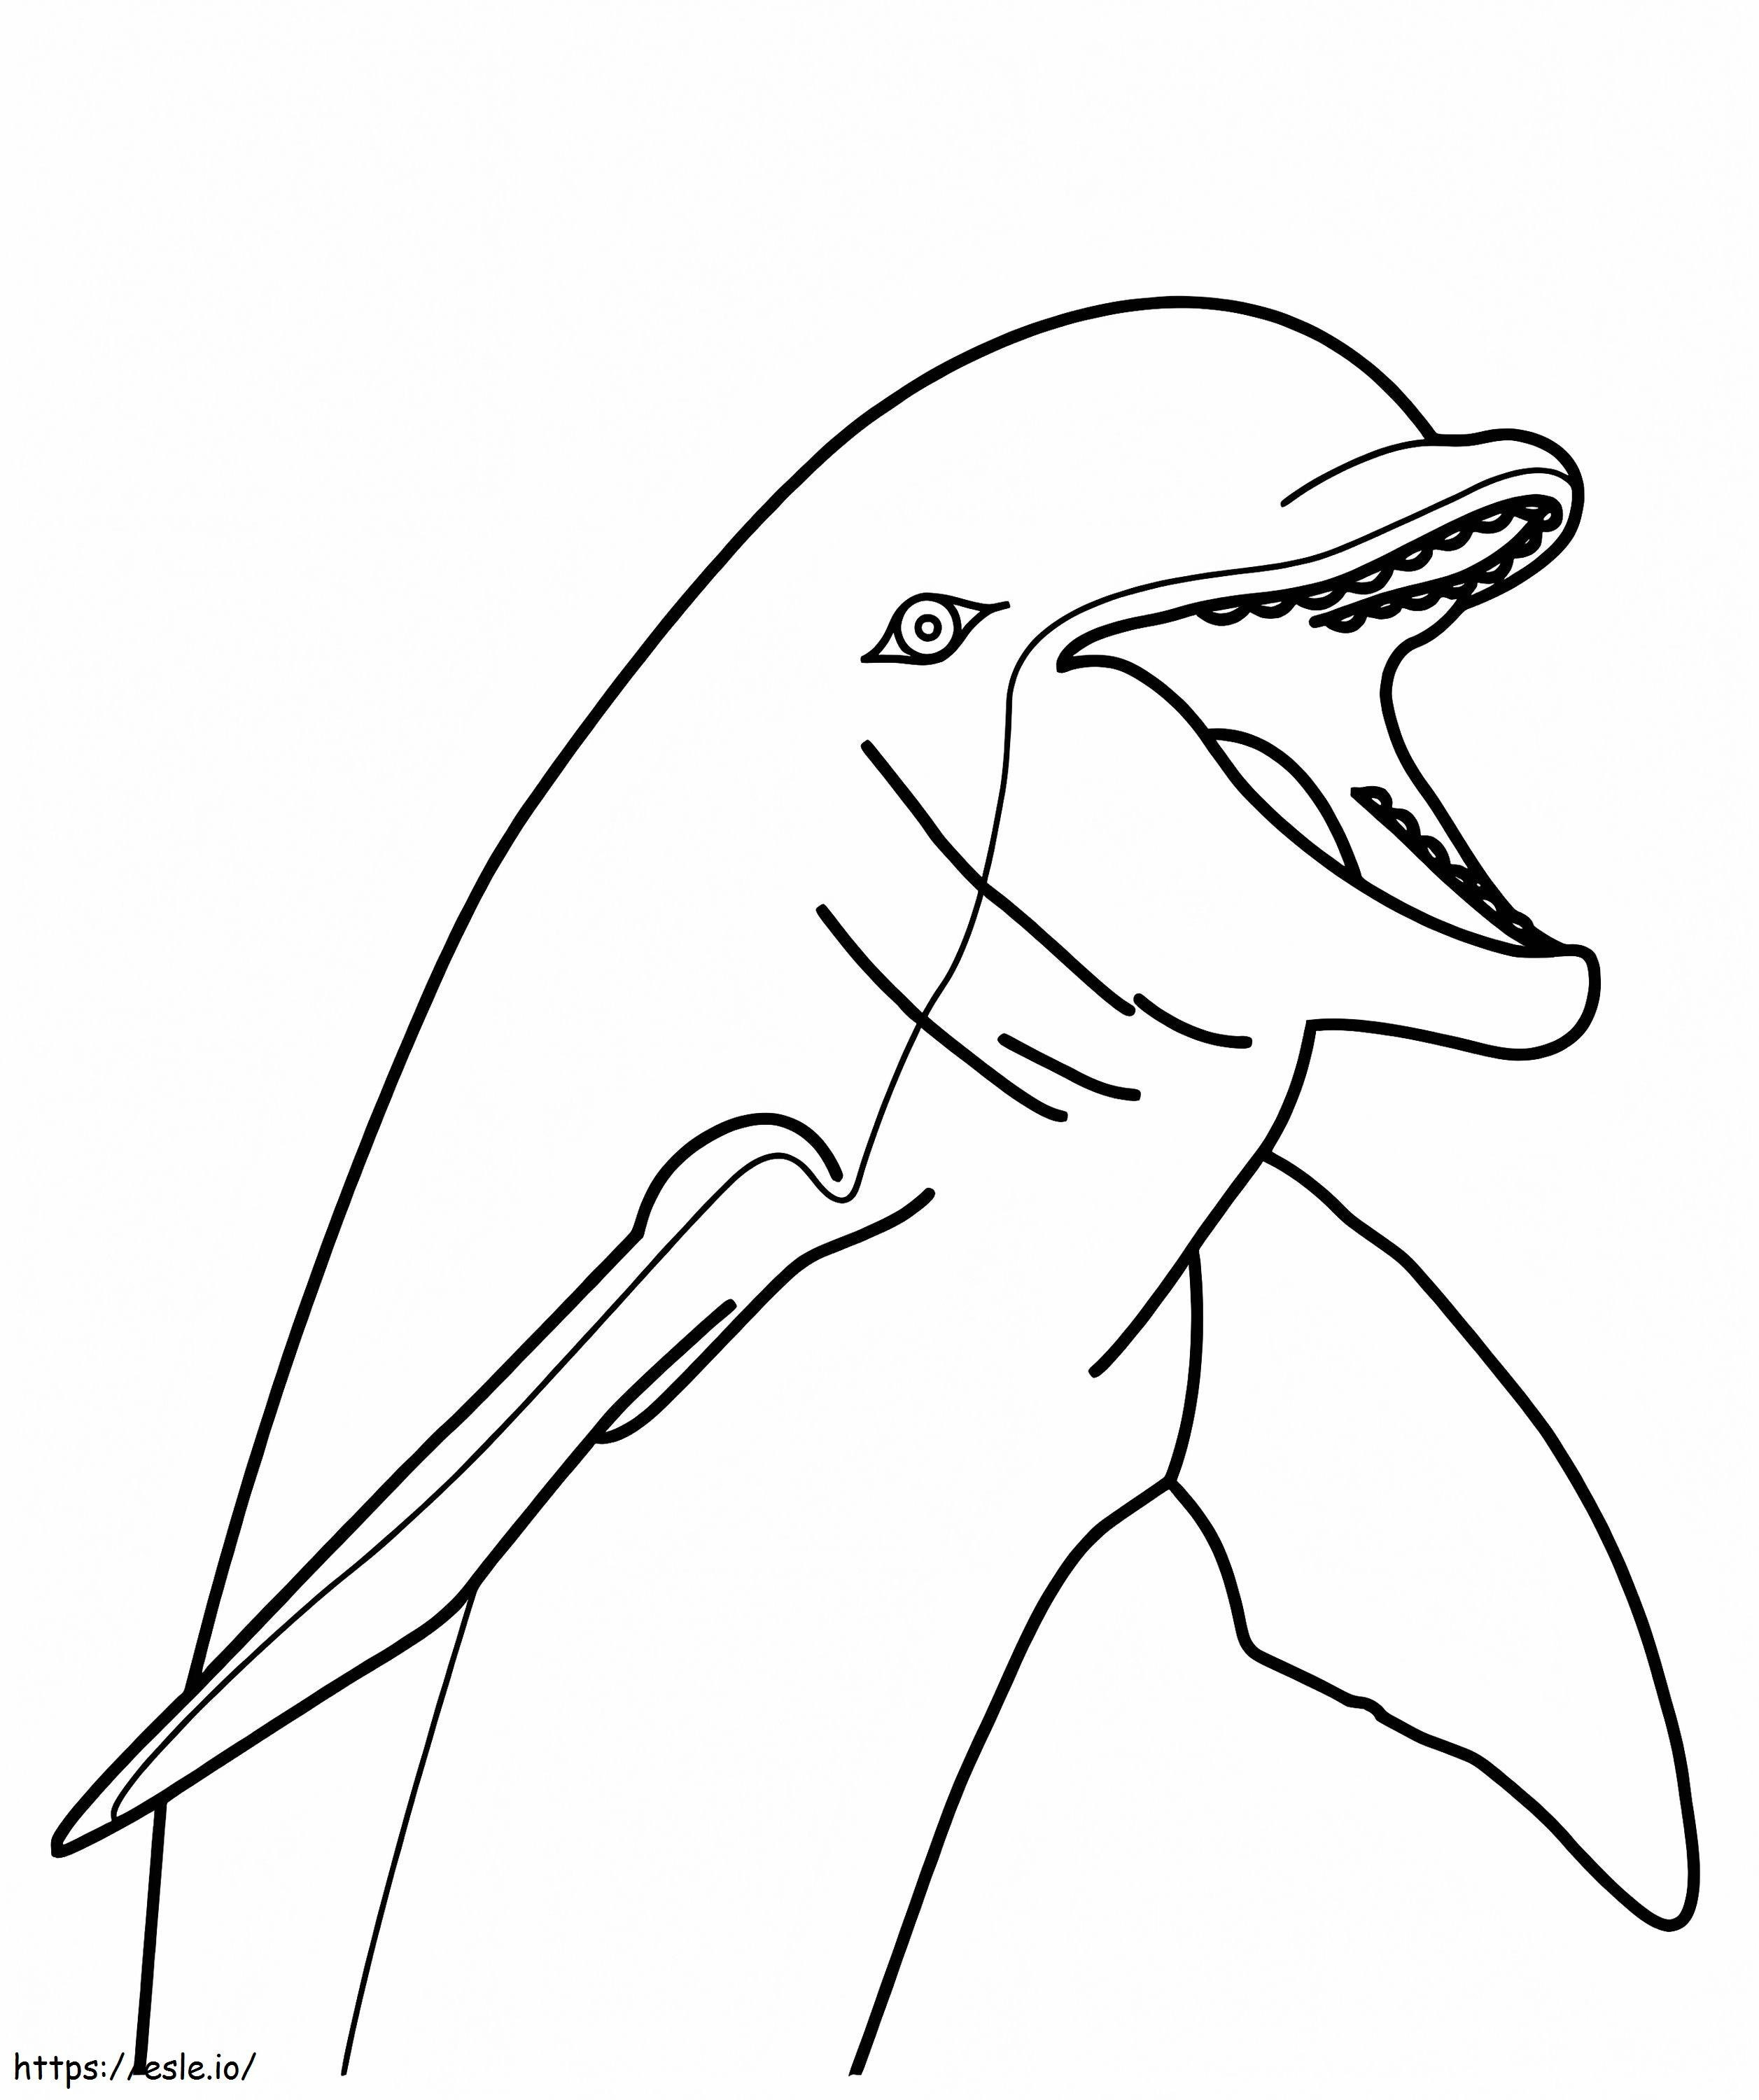 Cara de delfín para colorear